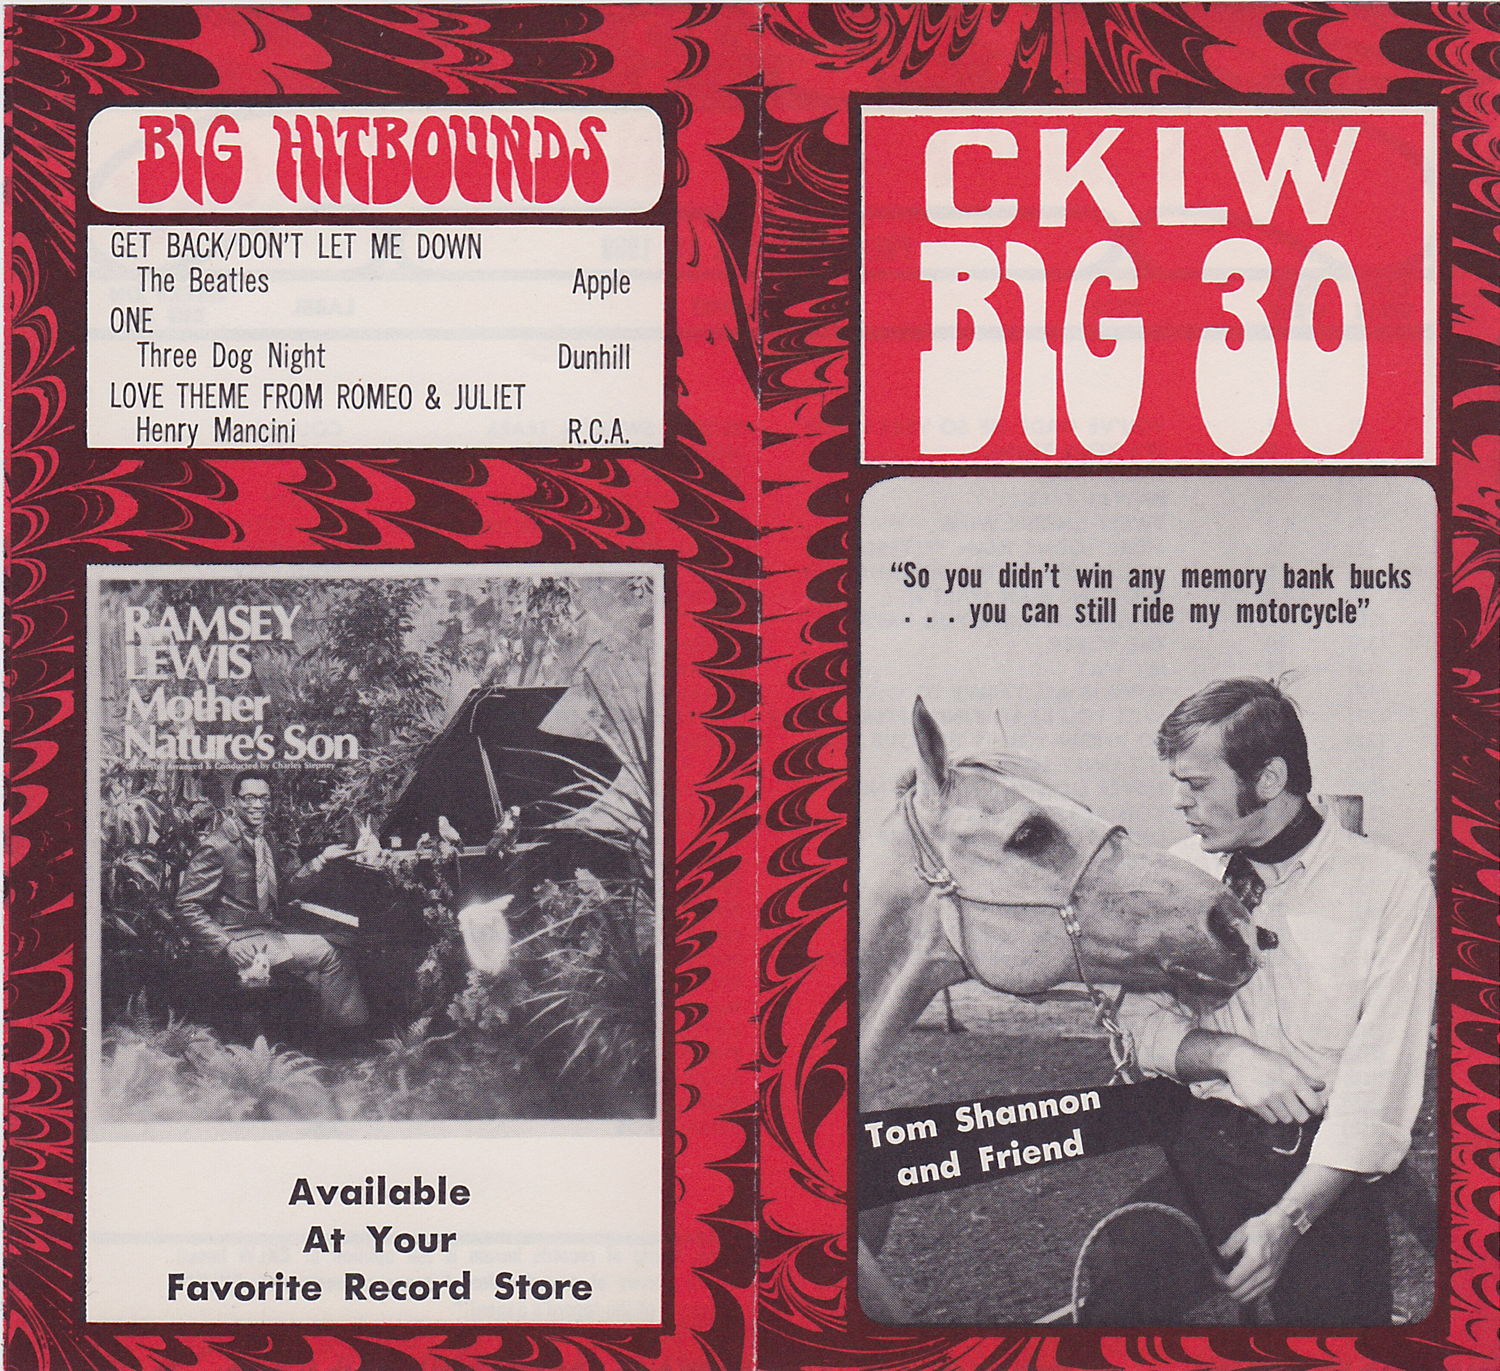 CKLW - April 15, 1969